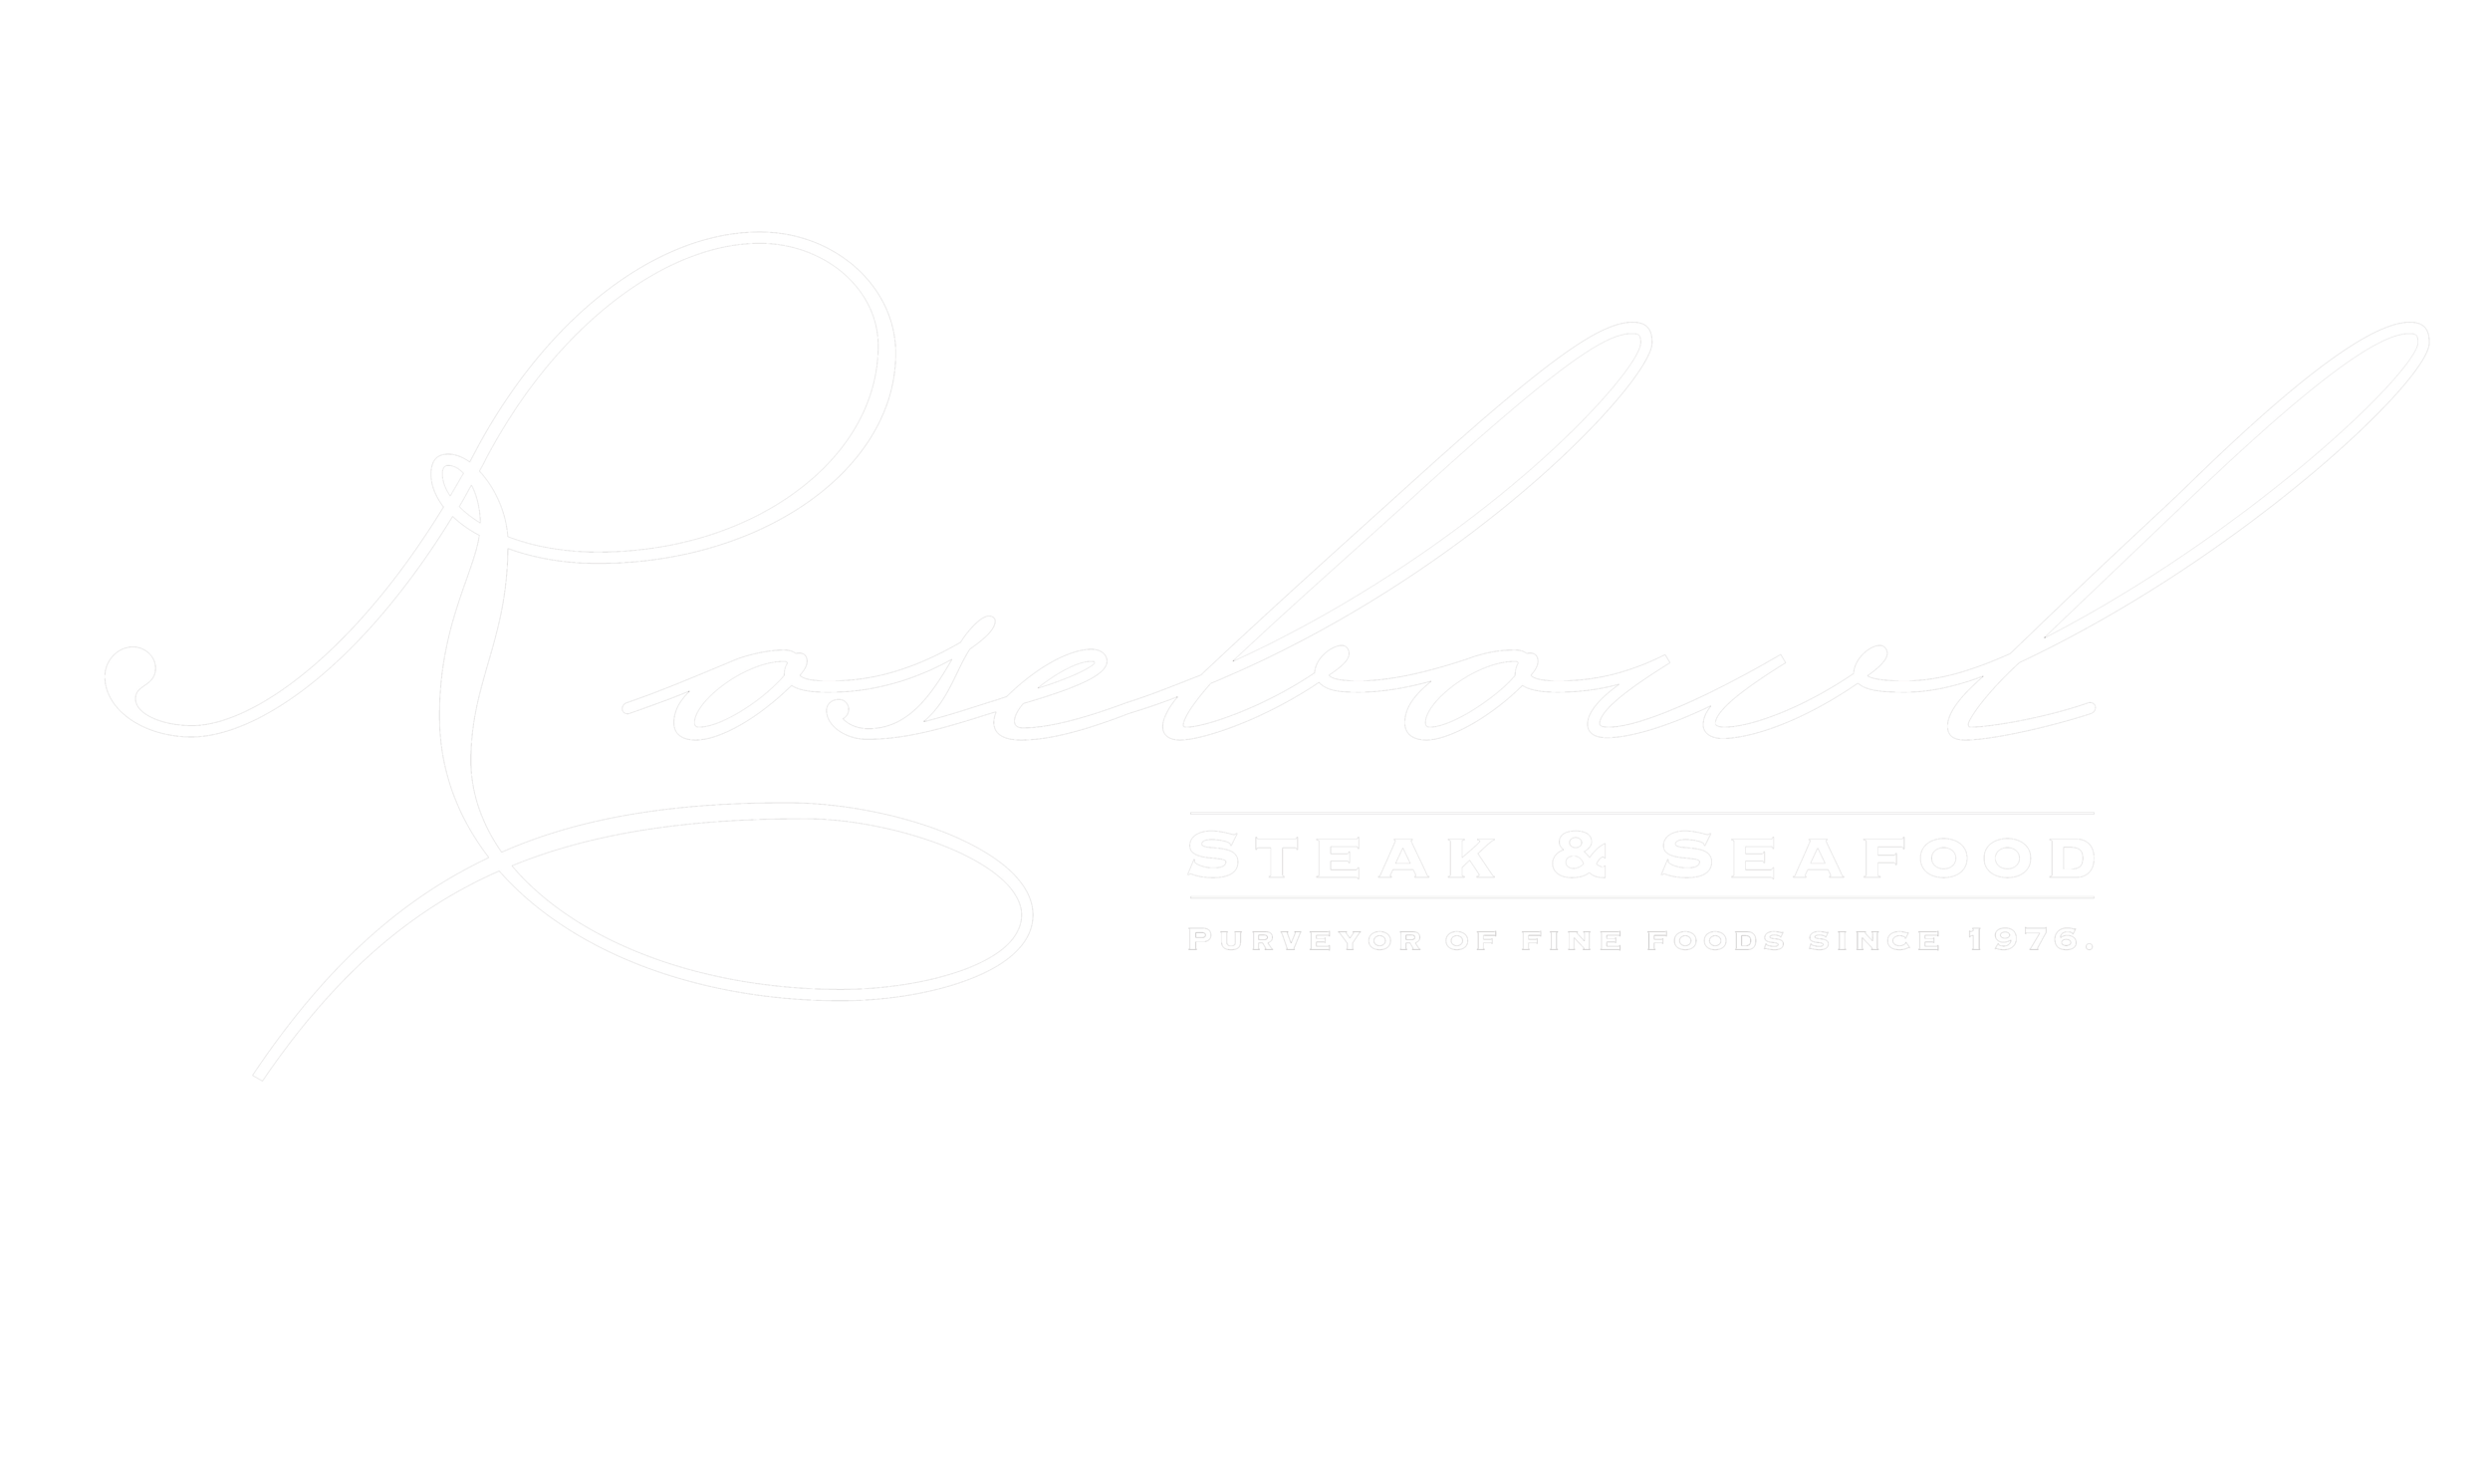 rosebowl steakhouse